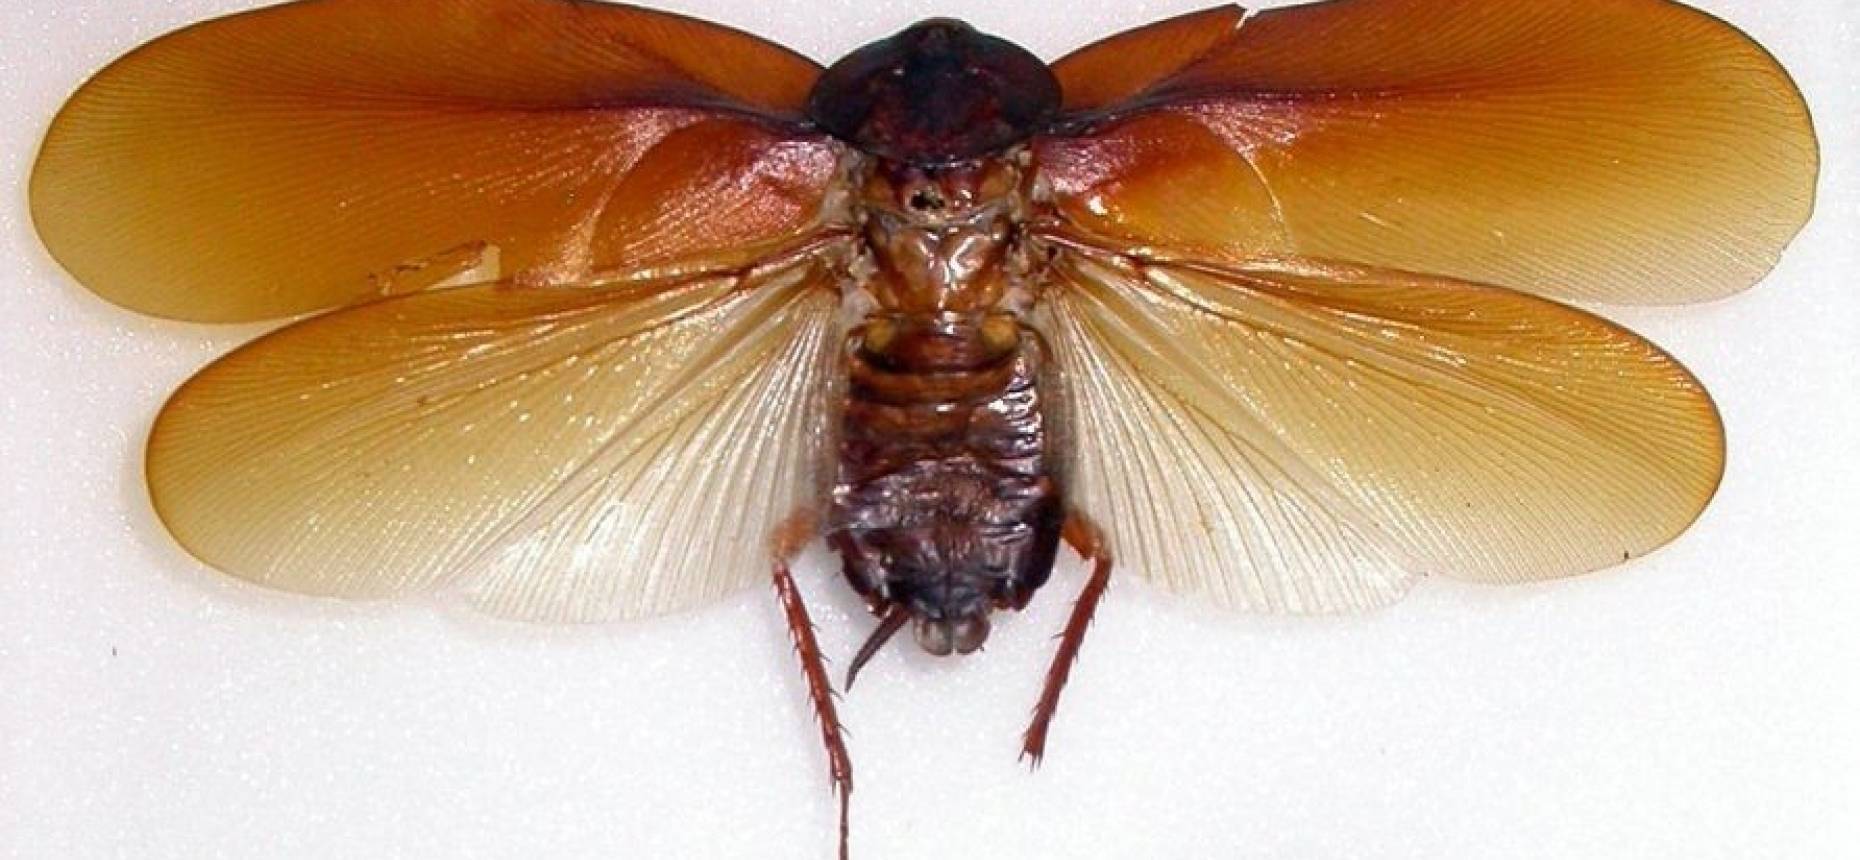 Тараканы прусаки: как выглядят (фото), как избавиться в квартире, почему их так называют?